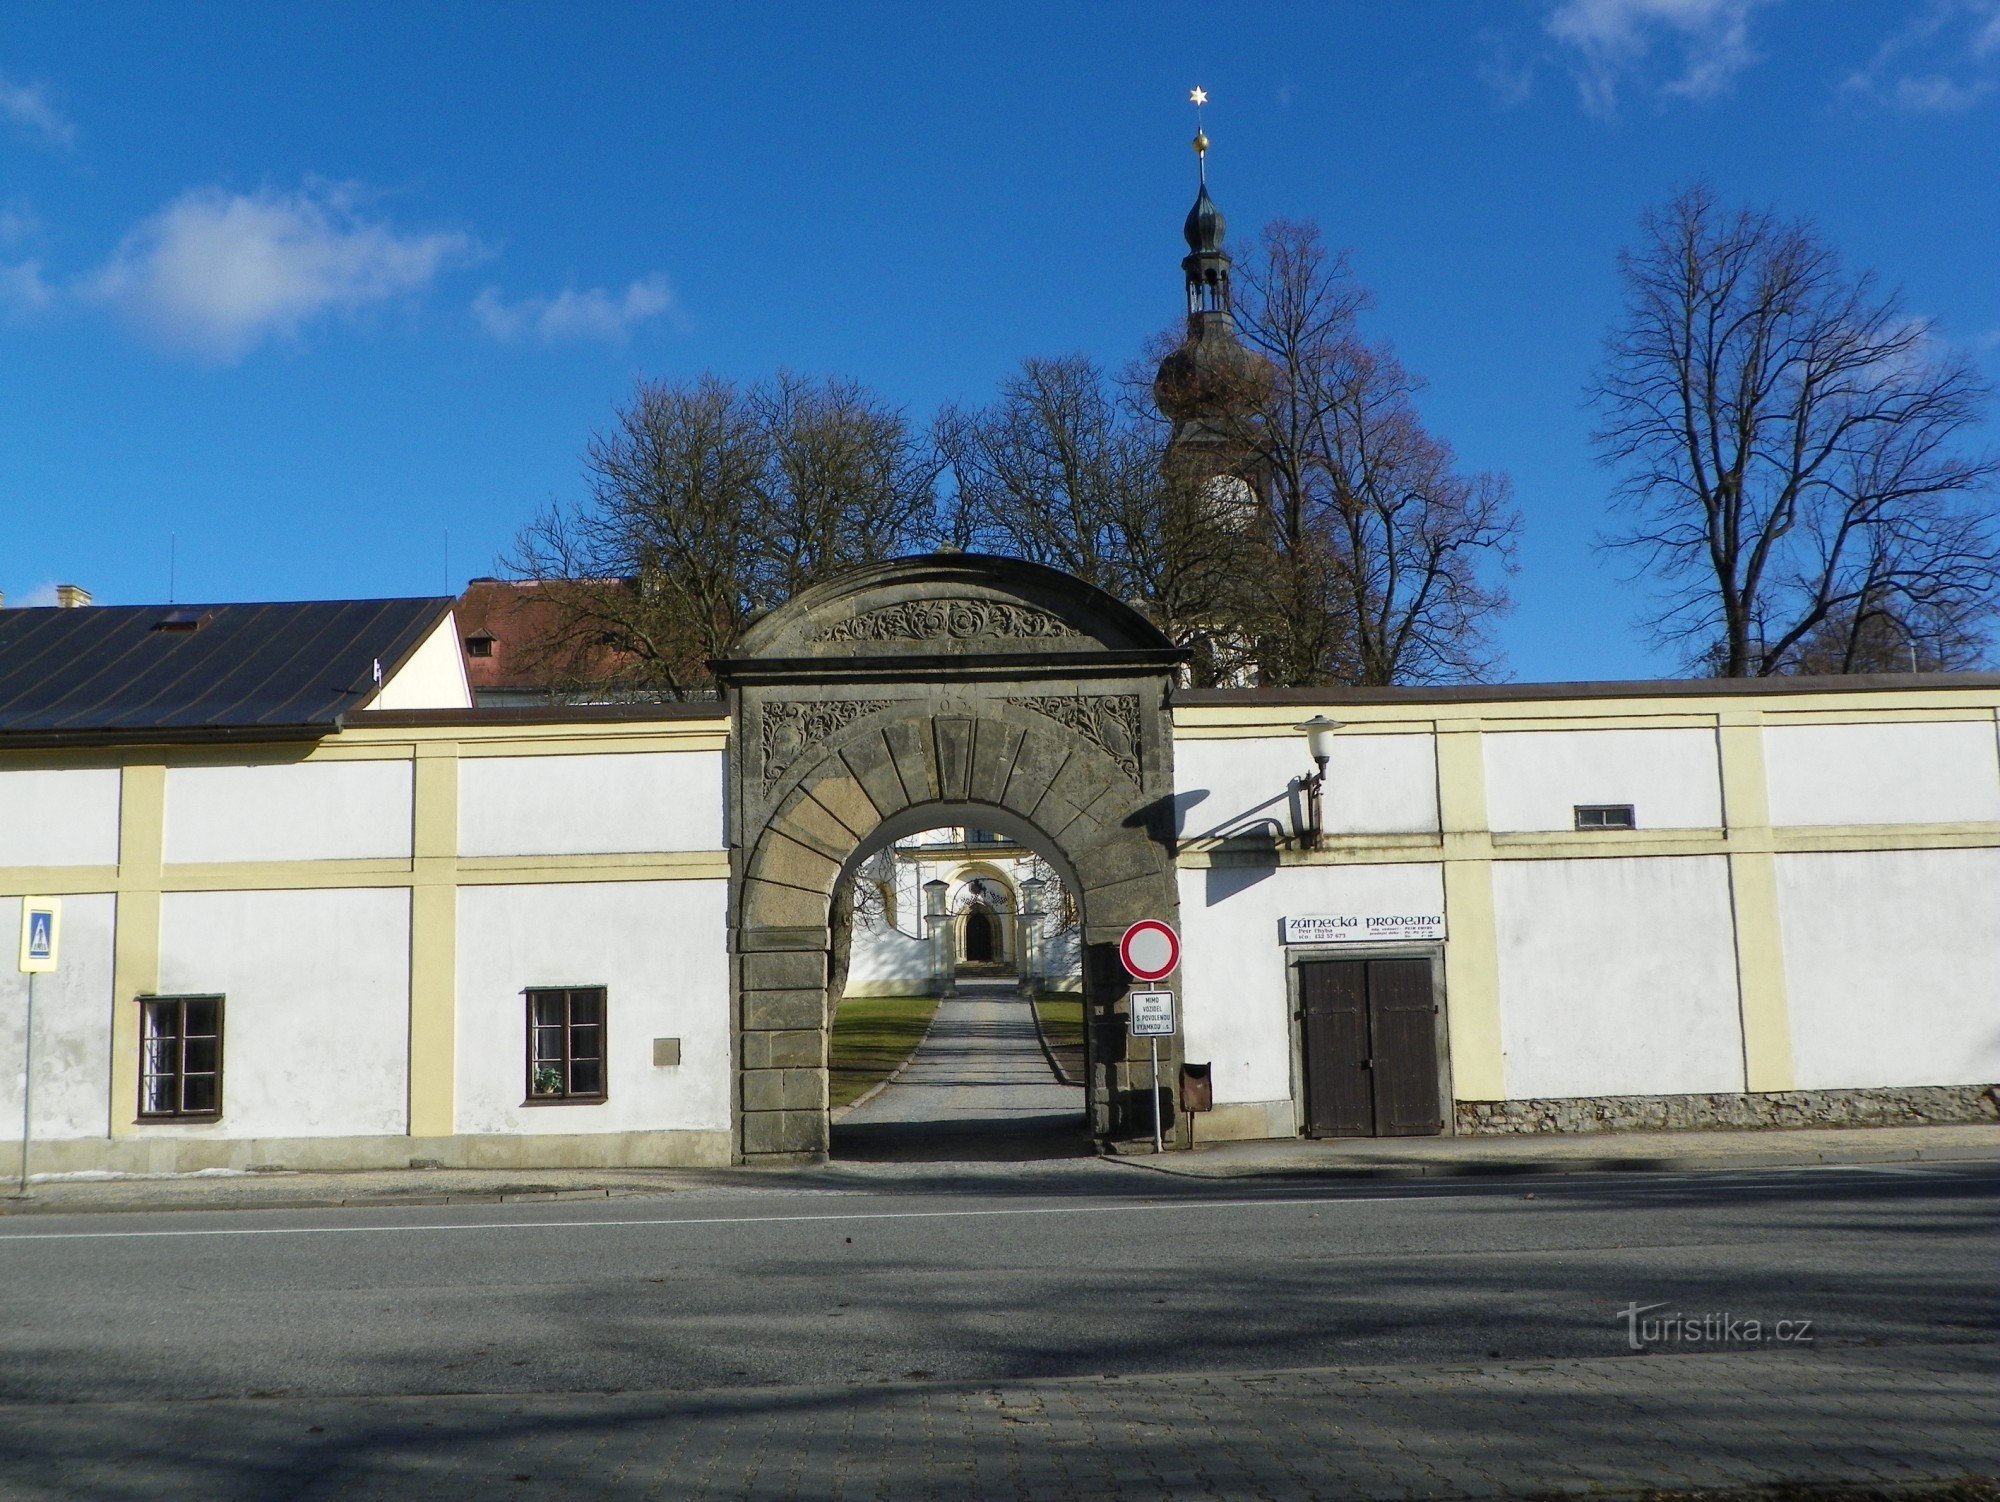 Η πύλη προς την περιοχή του κάστρου από το Bránské rybník